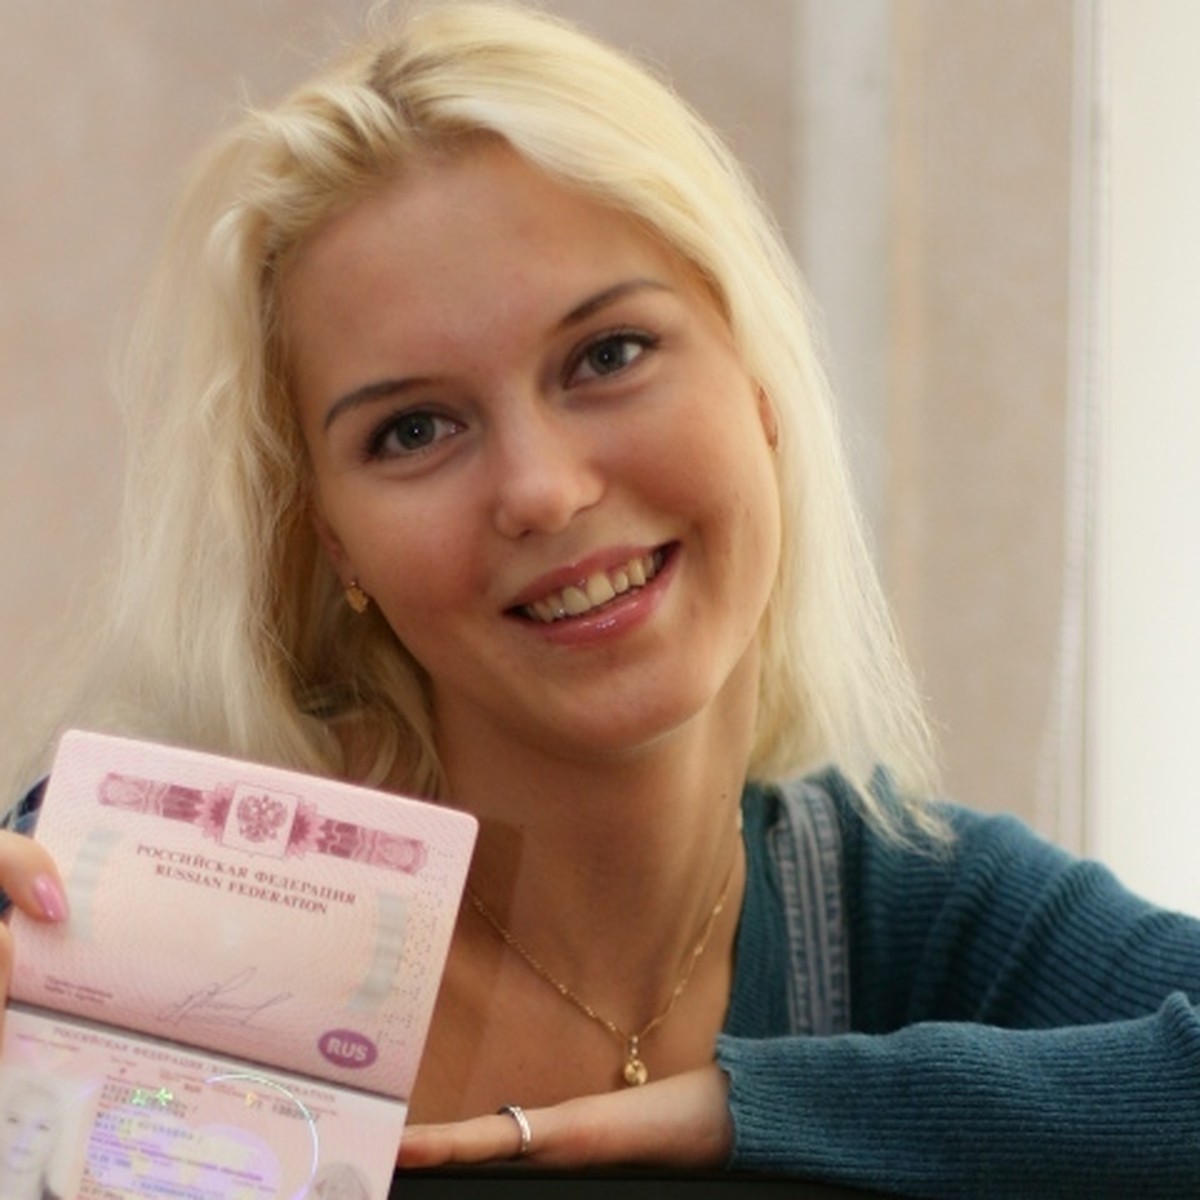 Блондинка на паспорт